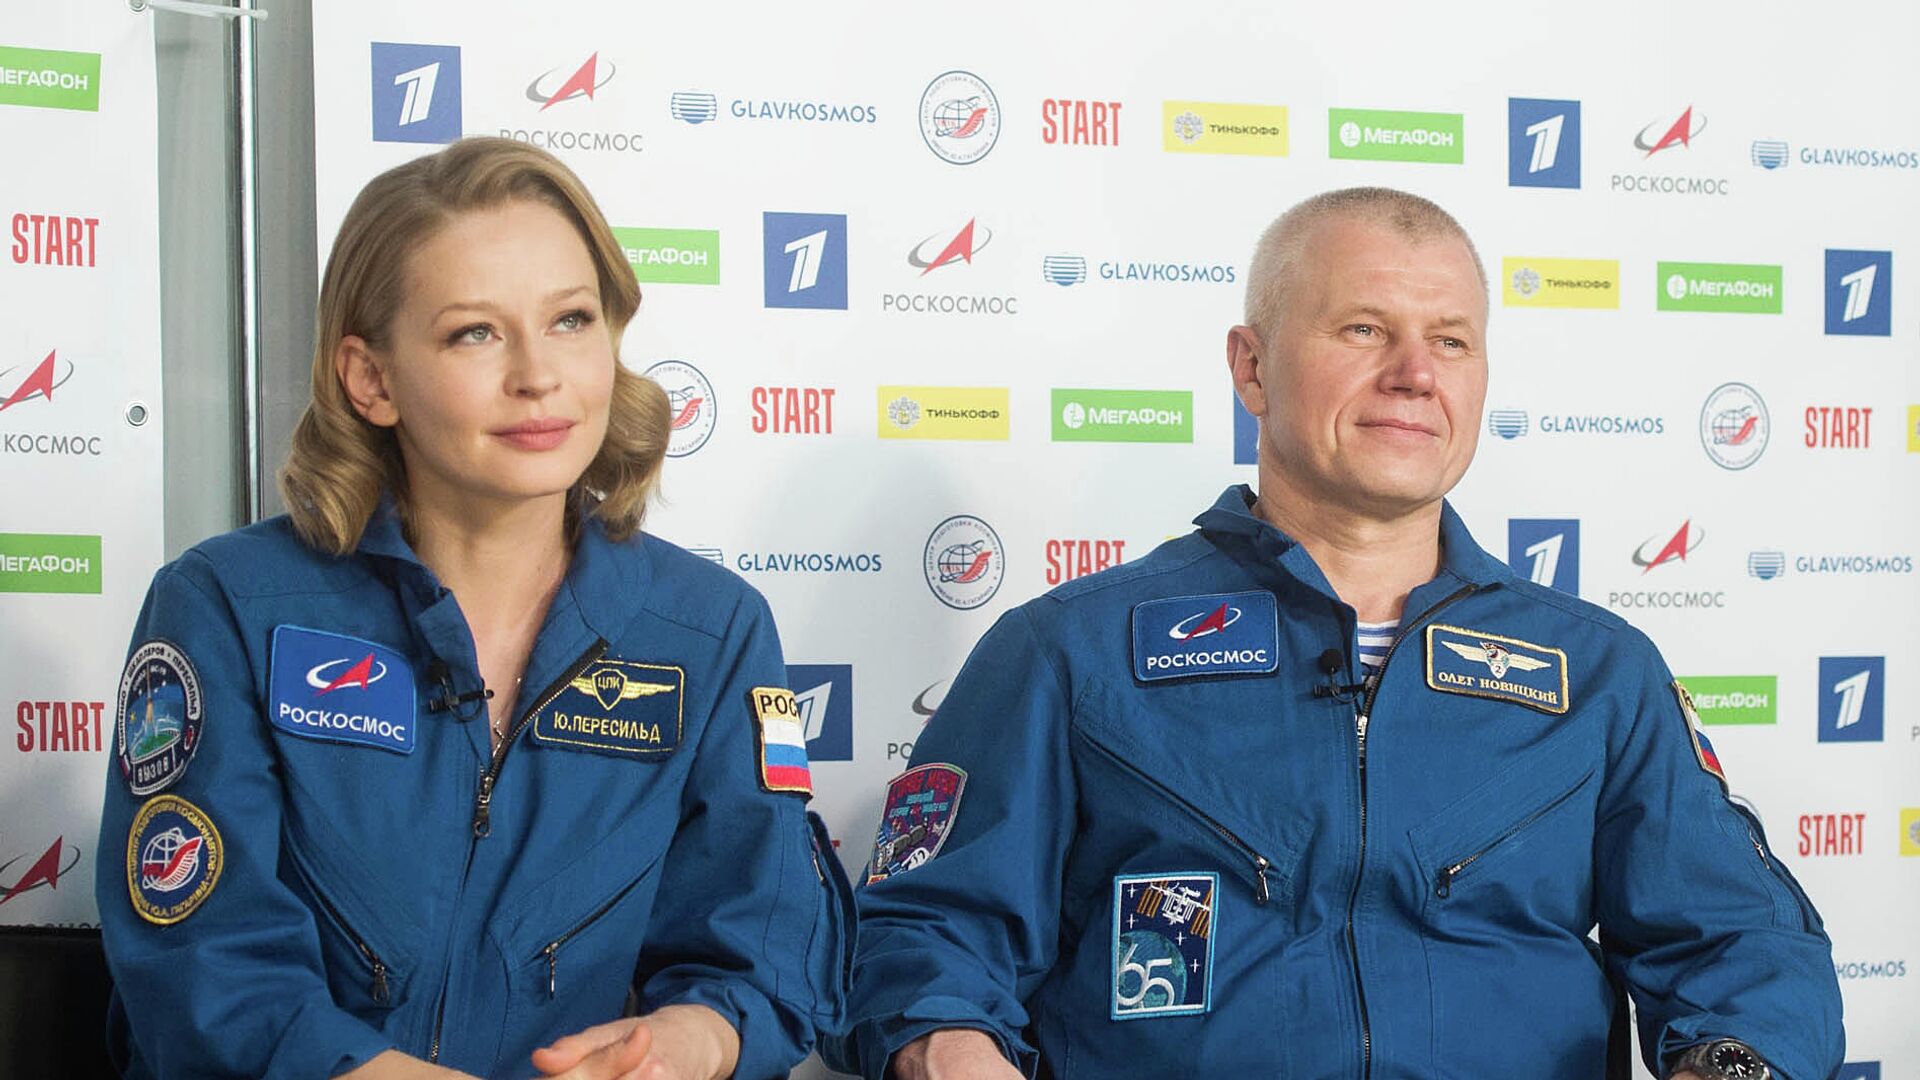 Шипенко рассказал, как готовил космонавтов к съемкам в кино